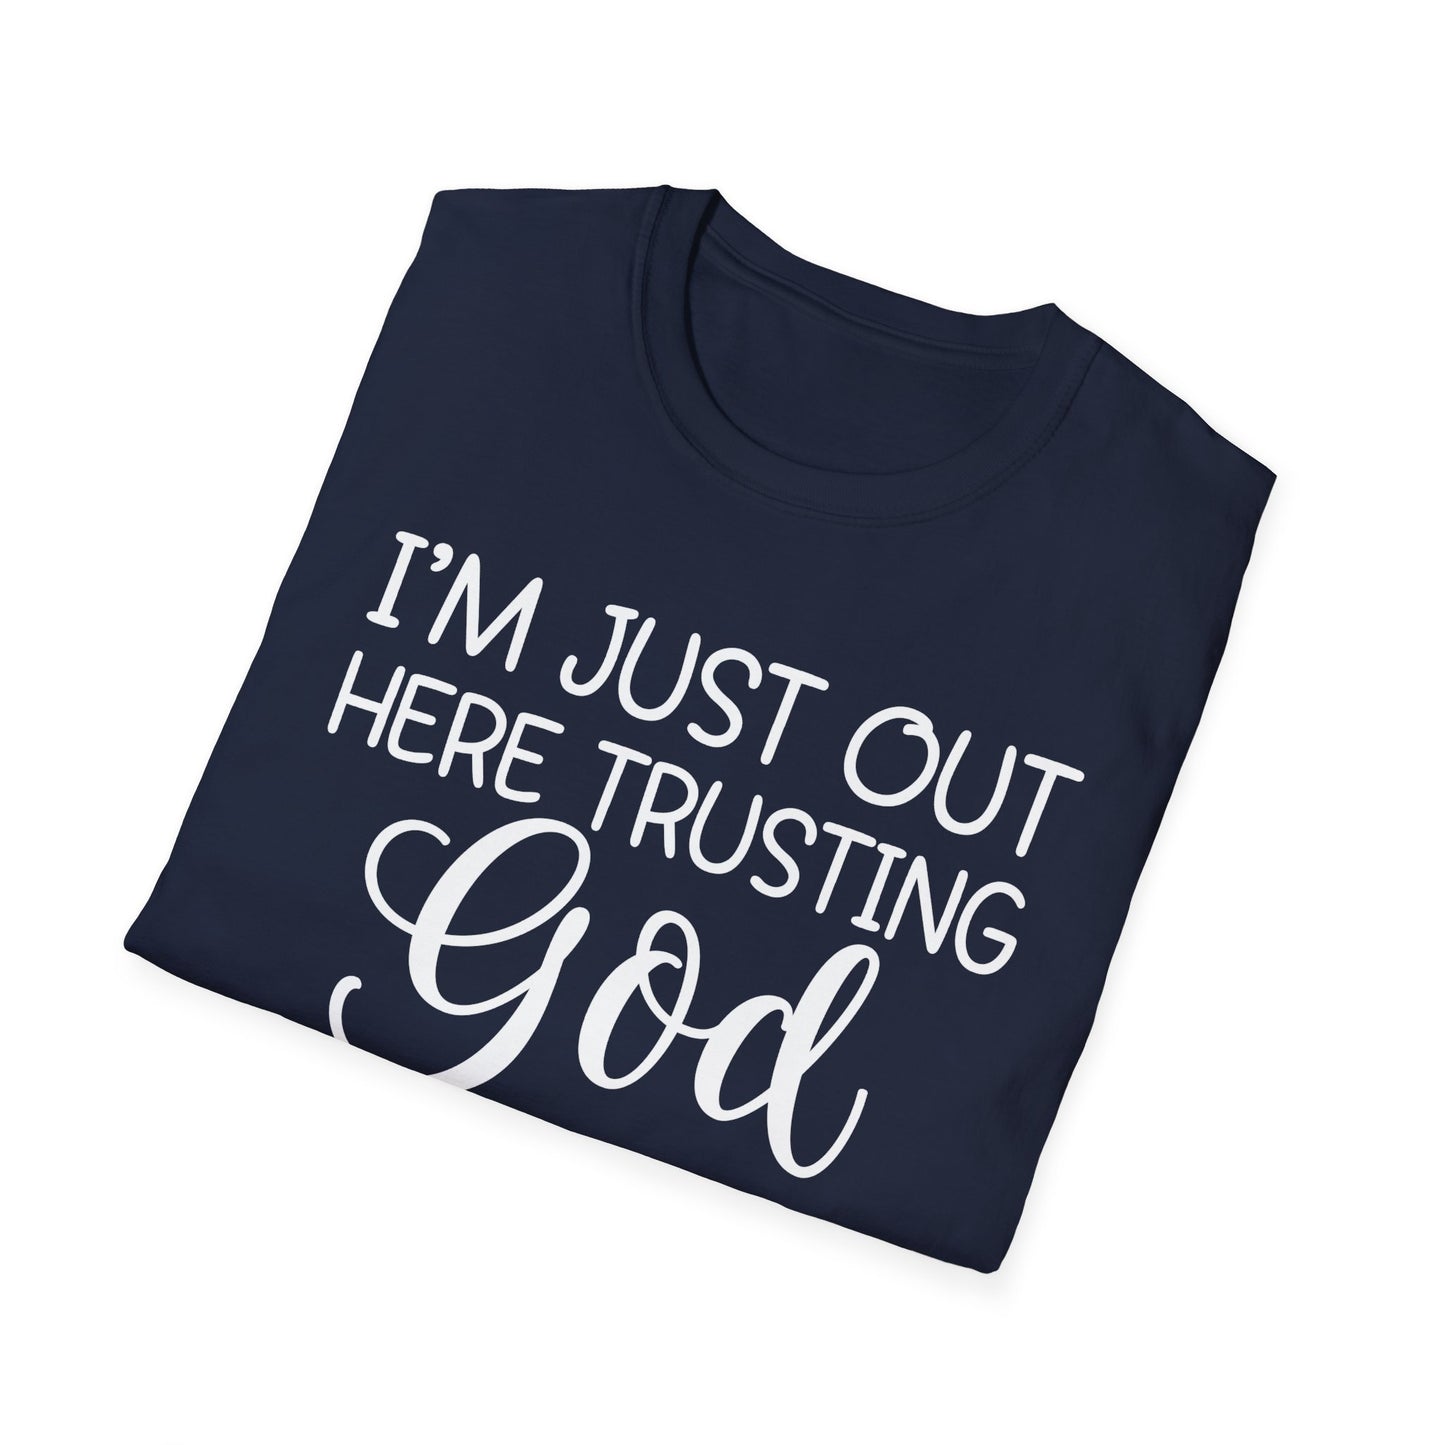 Trusting God Unisex Softstyle T-Shirt